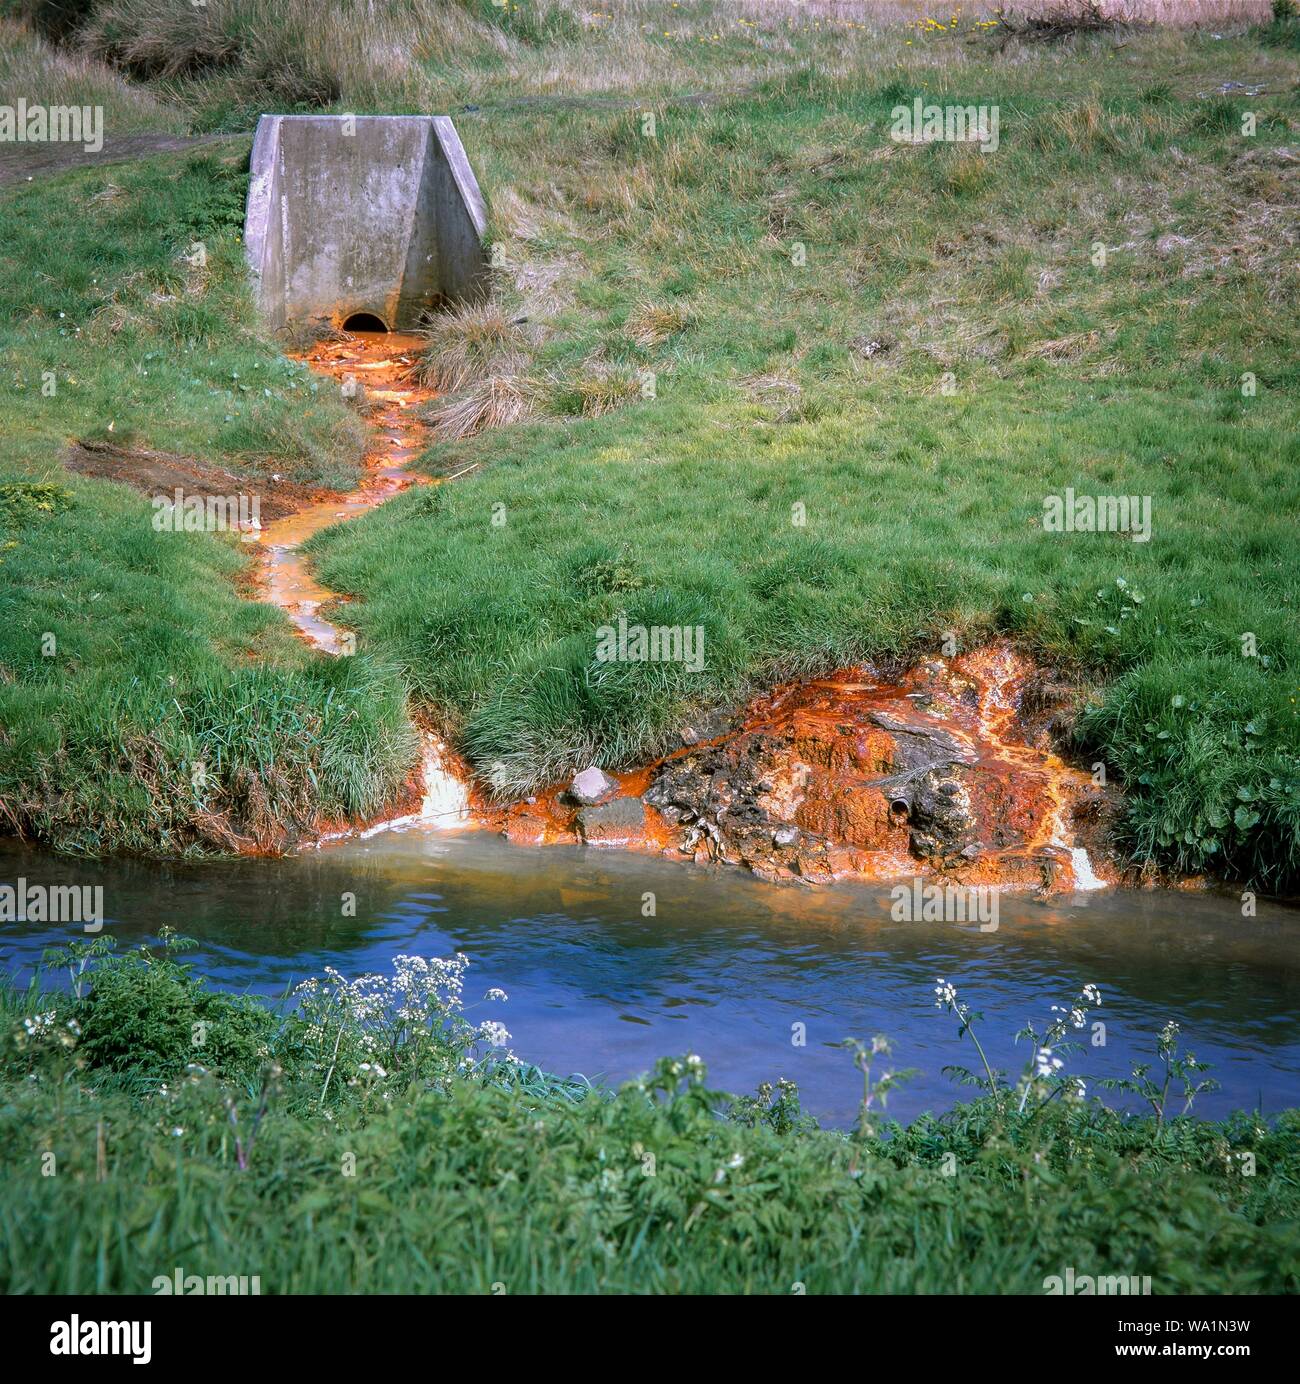 Chimicamente l acqua inquinata da scaricare nel fiume domare al di fuori della terra una volta utilizzati per scaricare i rifiuti contenenti metalli pesanti. West Midlands, Regno Unito. Foto Stock